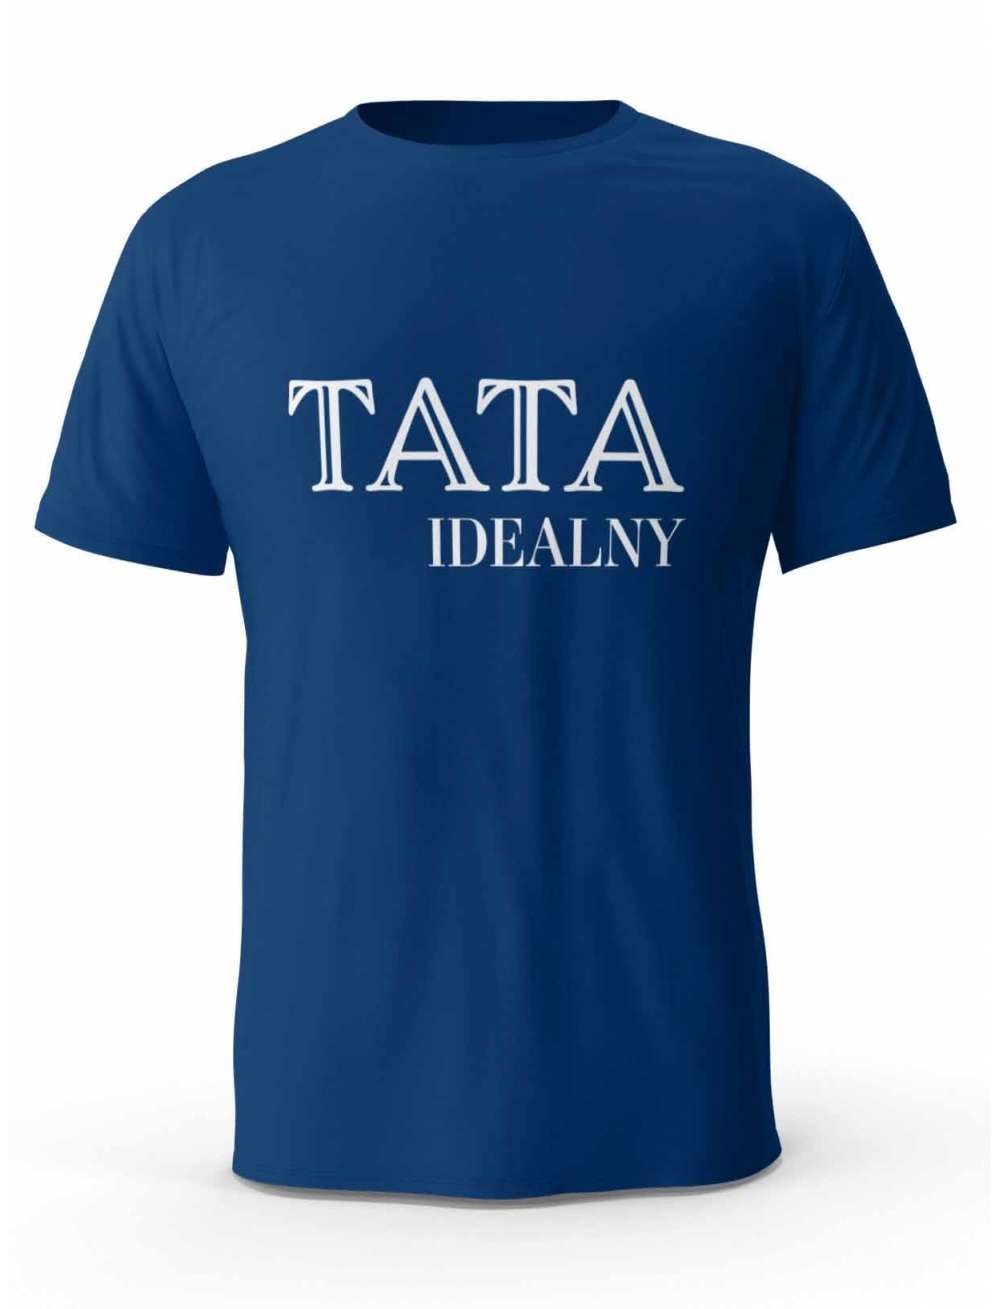 Koszulka Idealny Tata, T-shirt Dla Mężczyzny